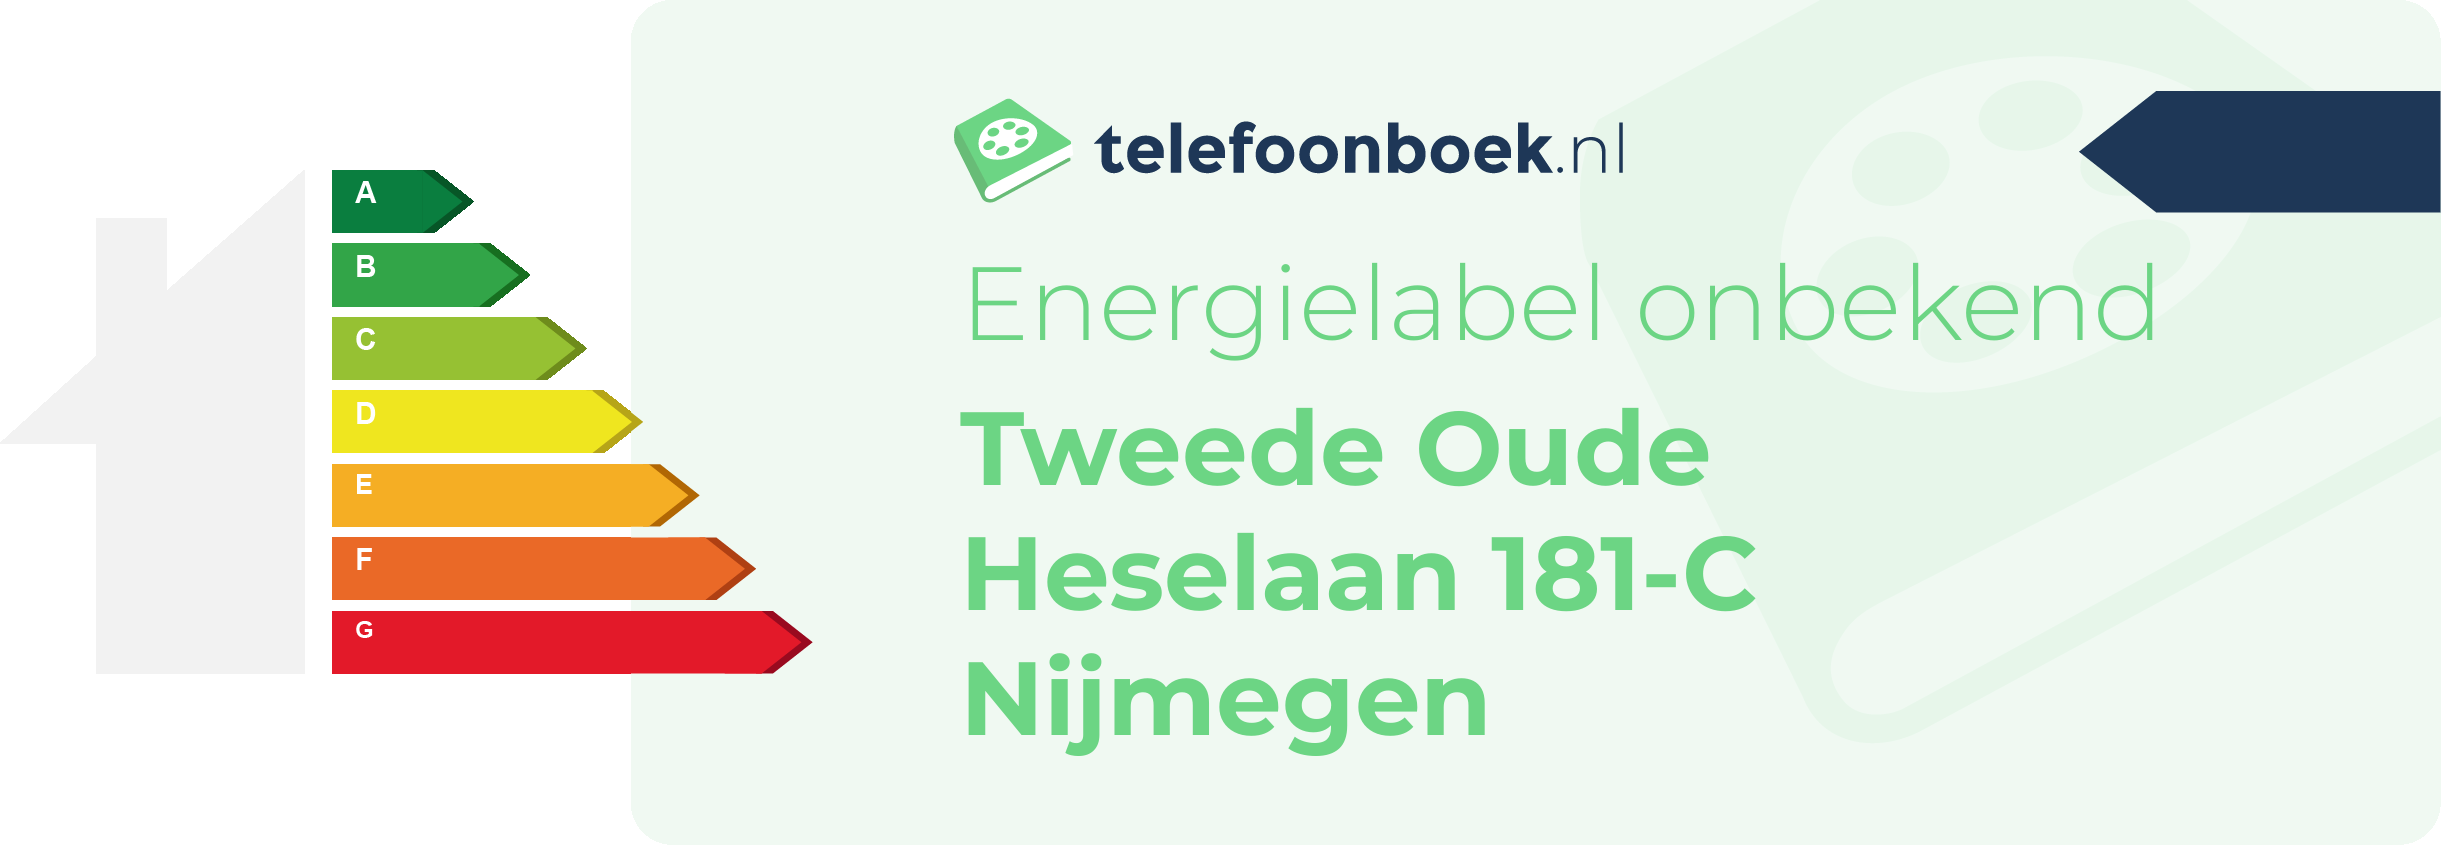 Energielabel Tweede Oude Heselaan 181-C Nijmegen